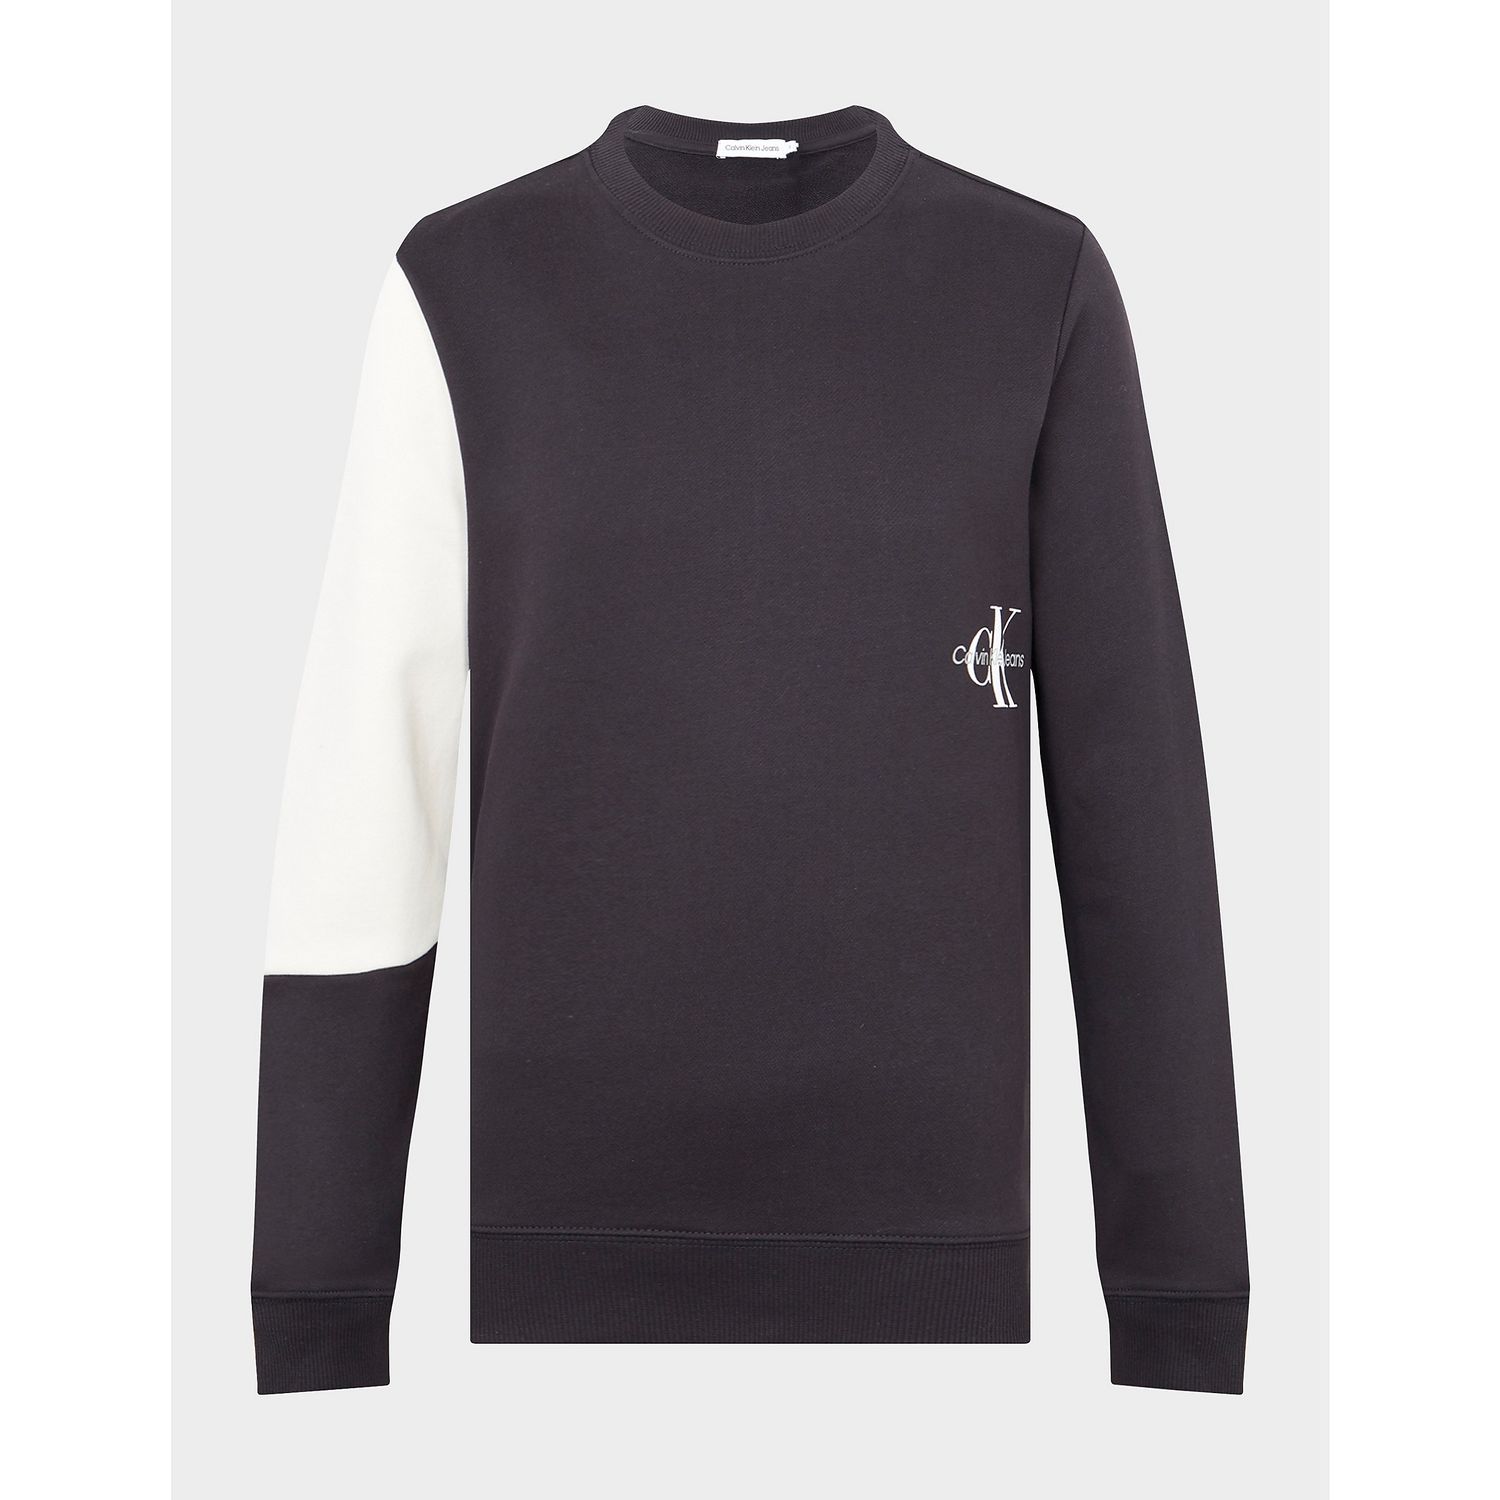 Calvin Klein Jeans Monogram Sweater Boy's